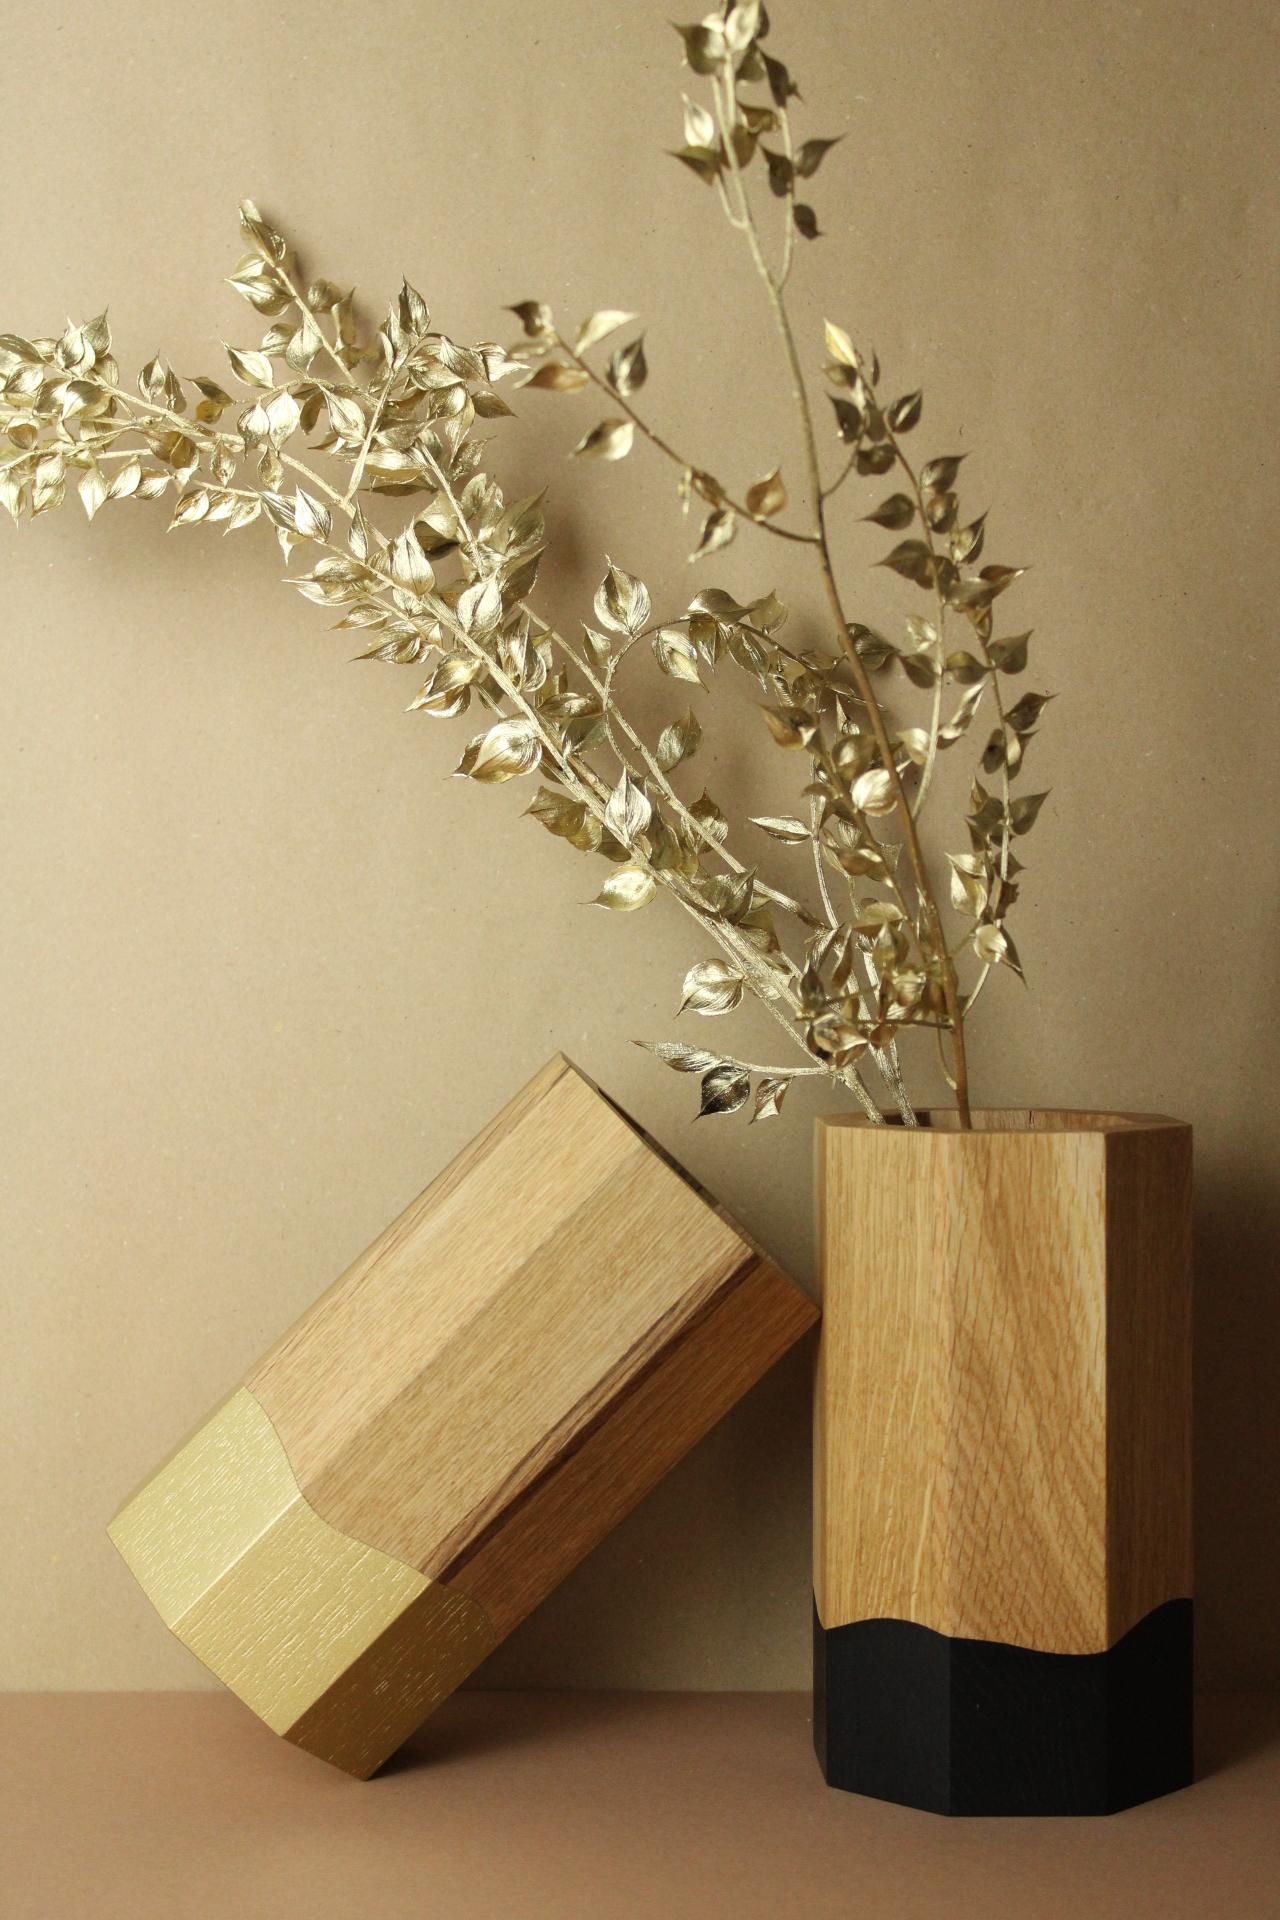 Ein Must-have sind diese handgefertigten Holzvasen namens Ecki von @cohlendorf_designstudio

#vaseecki #vasenglueck